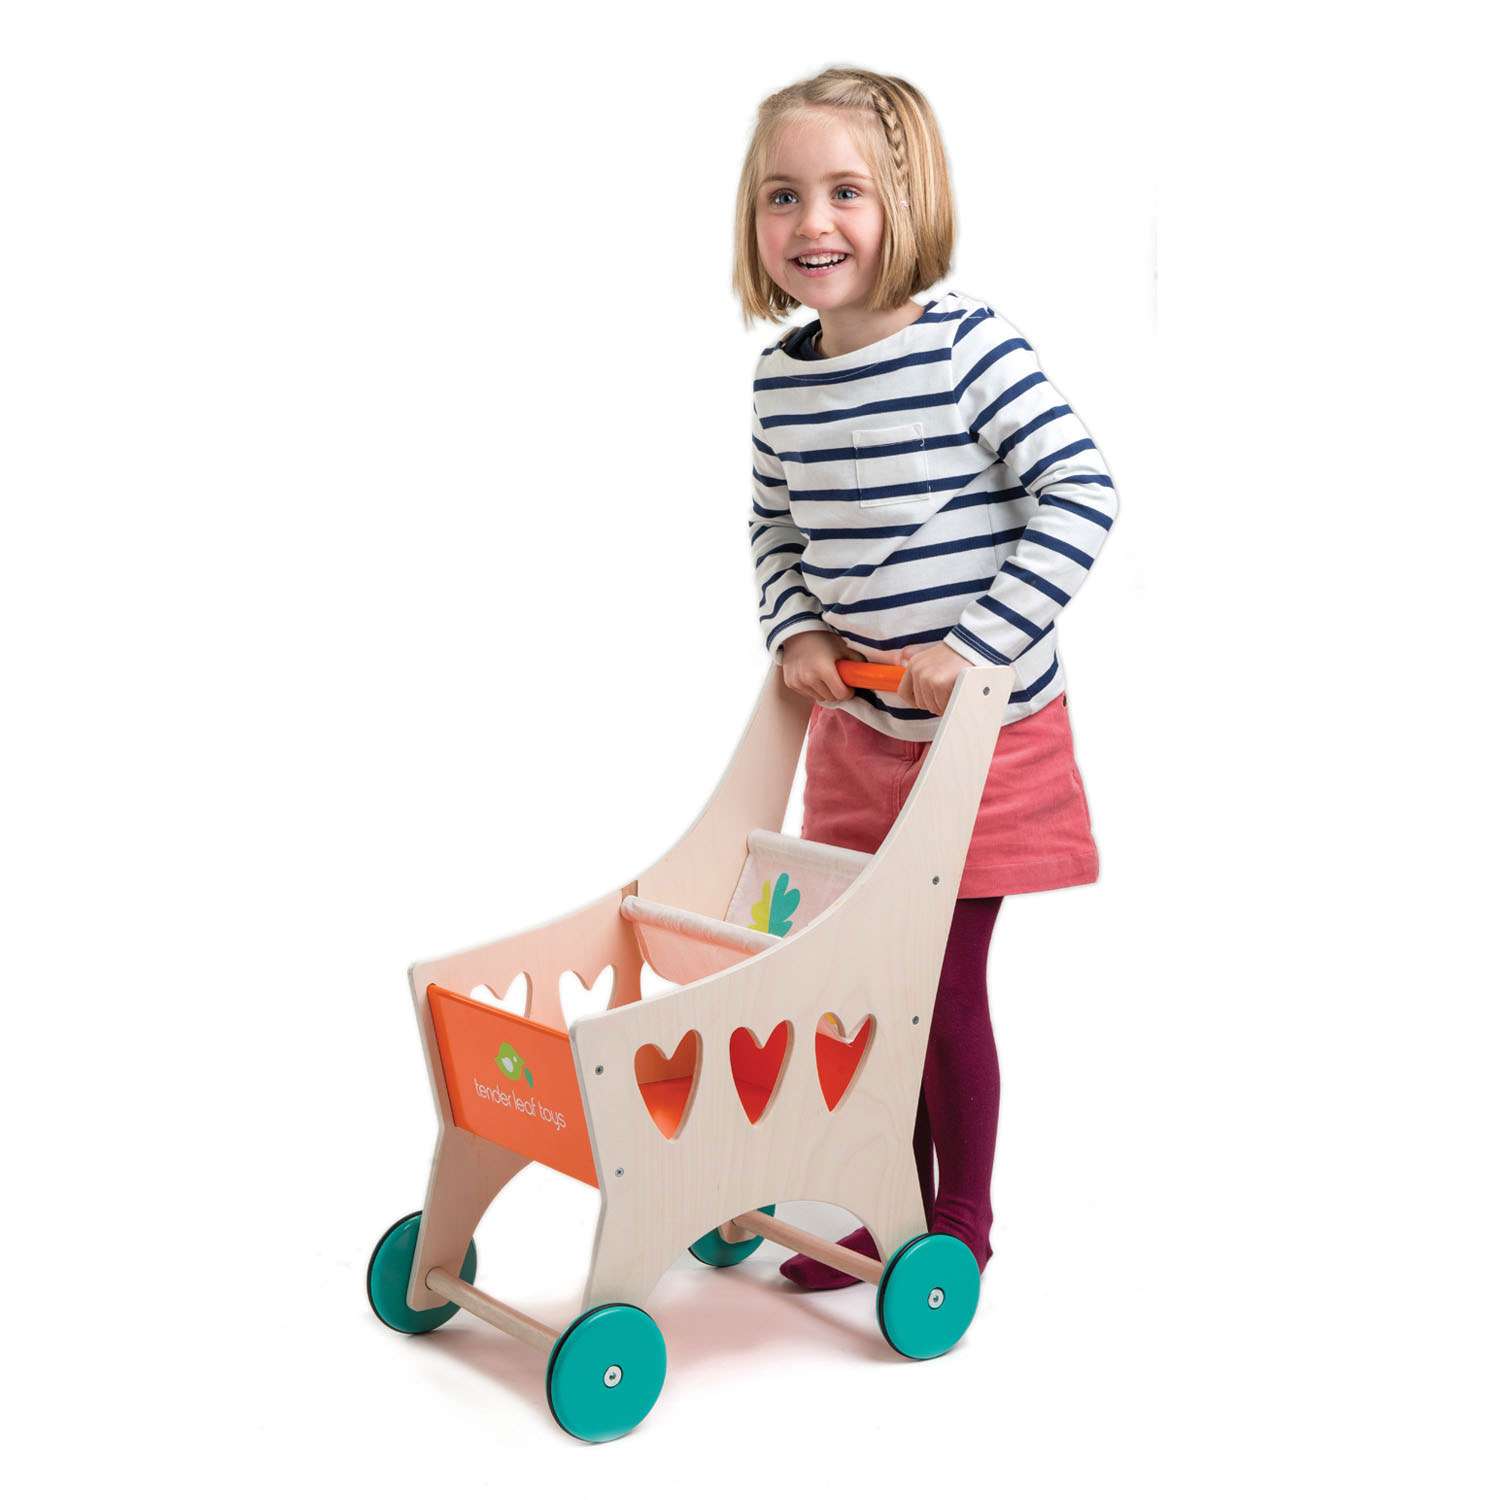 Tender Leaf Toys ของเล่นไม้ ของเล่นเด็ก รถเข็นช้อปปิ้ง Shopping Cart